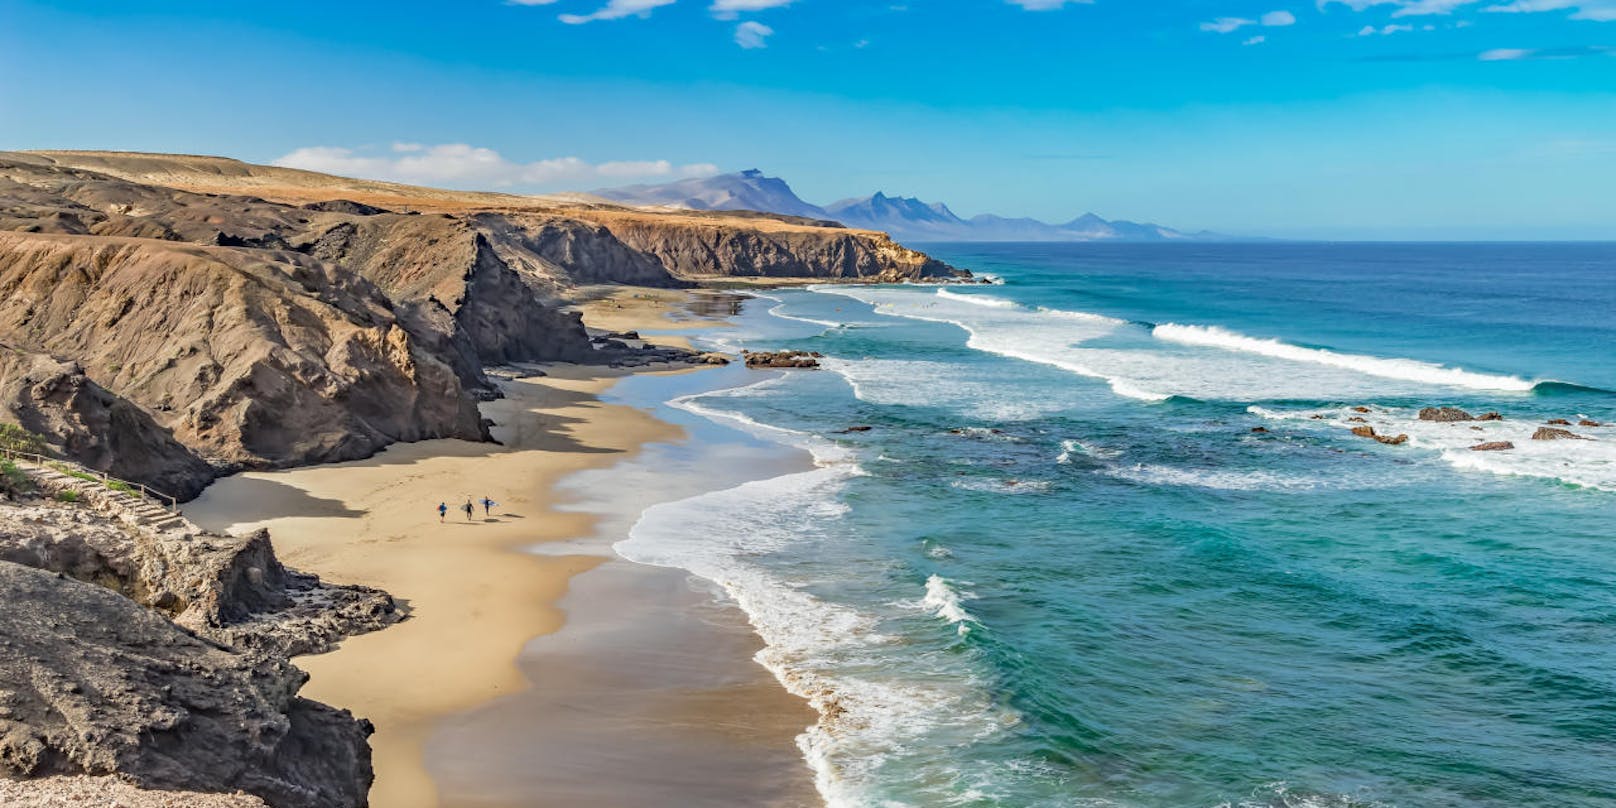 <b>10. Kanarische Inseln - bis zu 6,5 Sonnenstunden pro Tag</b>

Wer nicht so weit fliegen und mehrere Stunden Zeitverschiebung umgehen möchte, für den sind die Kanaren genau das Richtige. Hier gibt es mit rund sechseinhalb Stunden Sonne am Tag zwar nicht so viel Sonnenschein wie in der Karibik oder in Asien - um die warmen Sonnenstrahlen zu genießen, reicht es aber allemal. Ob Gran Canaria, Teneriffa oder Fuerteventura: Auf den Inseln im Atlantik lässt sich neue Energie tanken und die Sonne am Strand genießen.